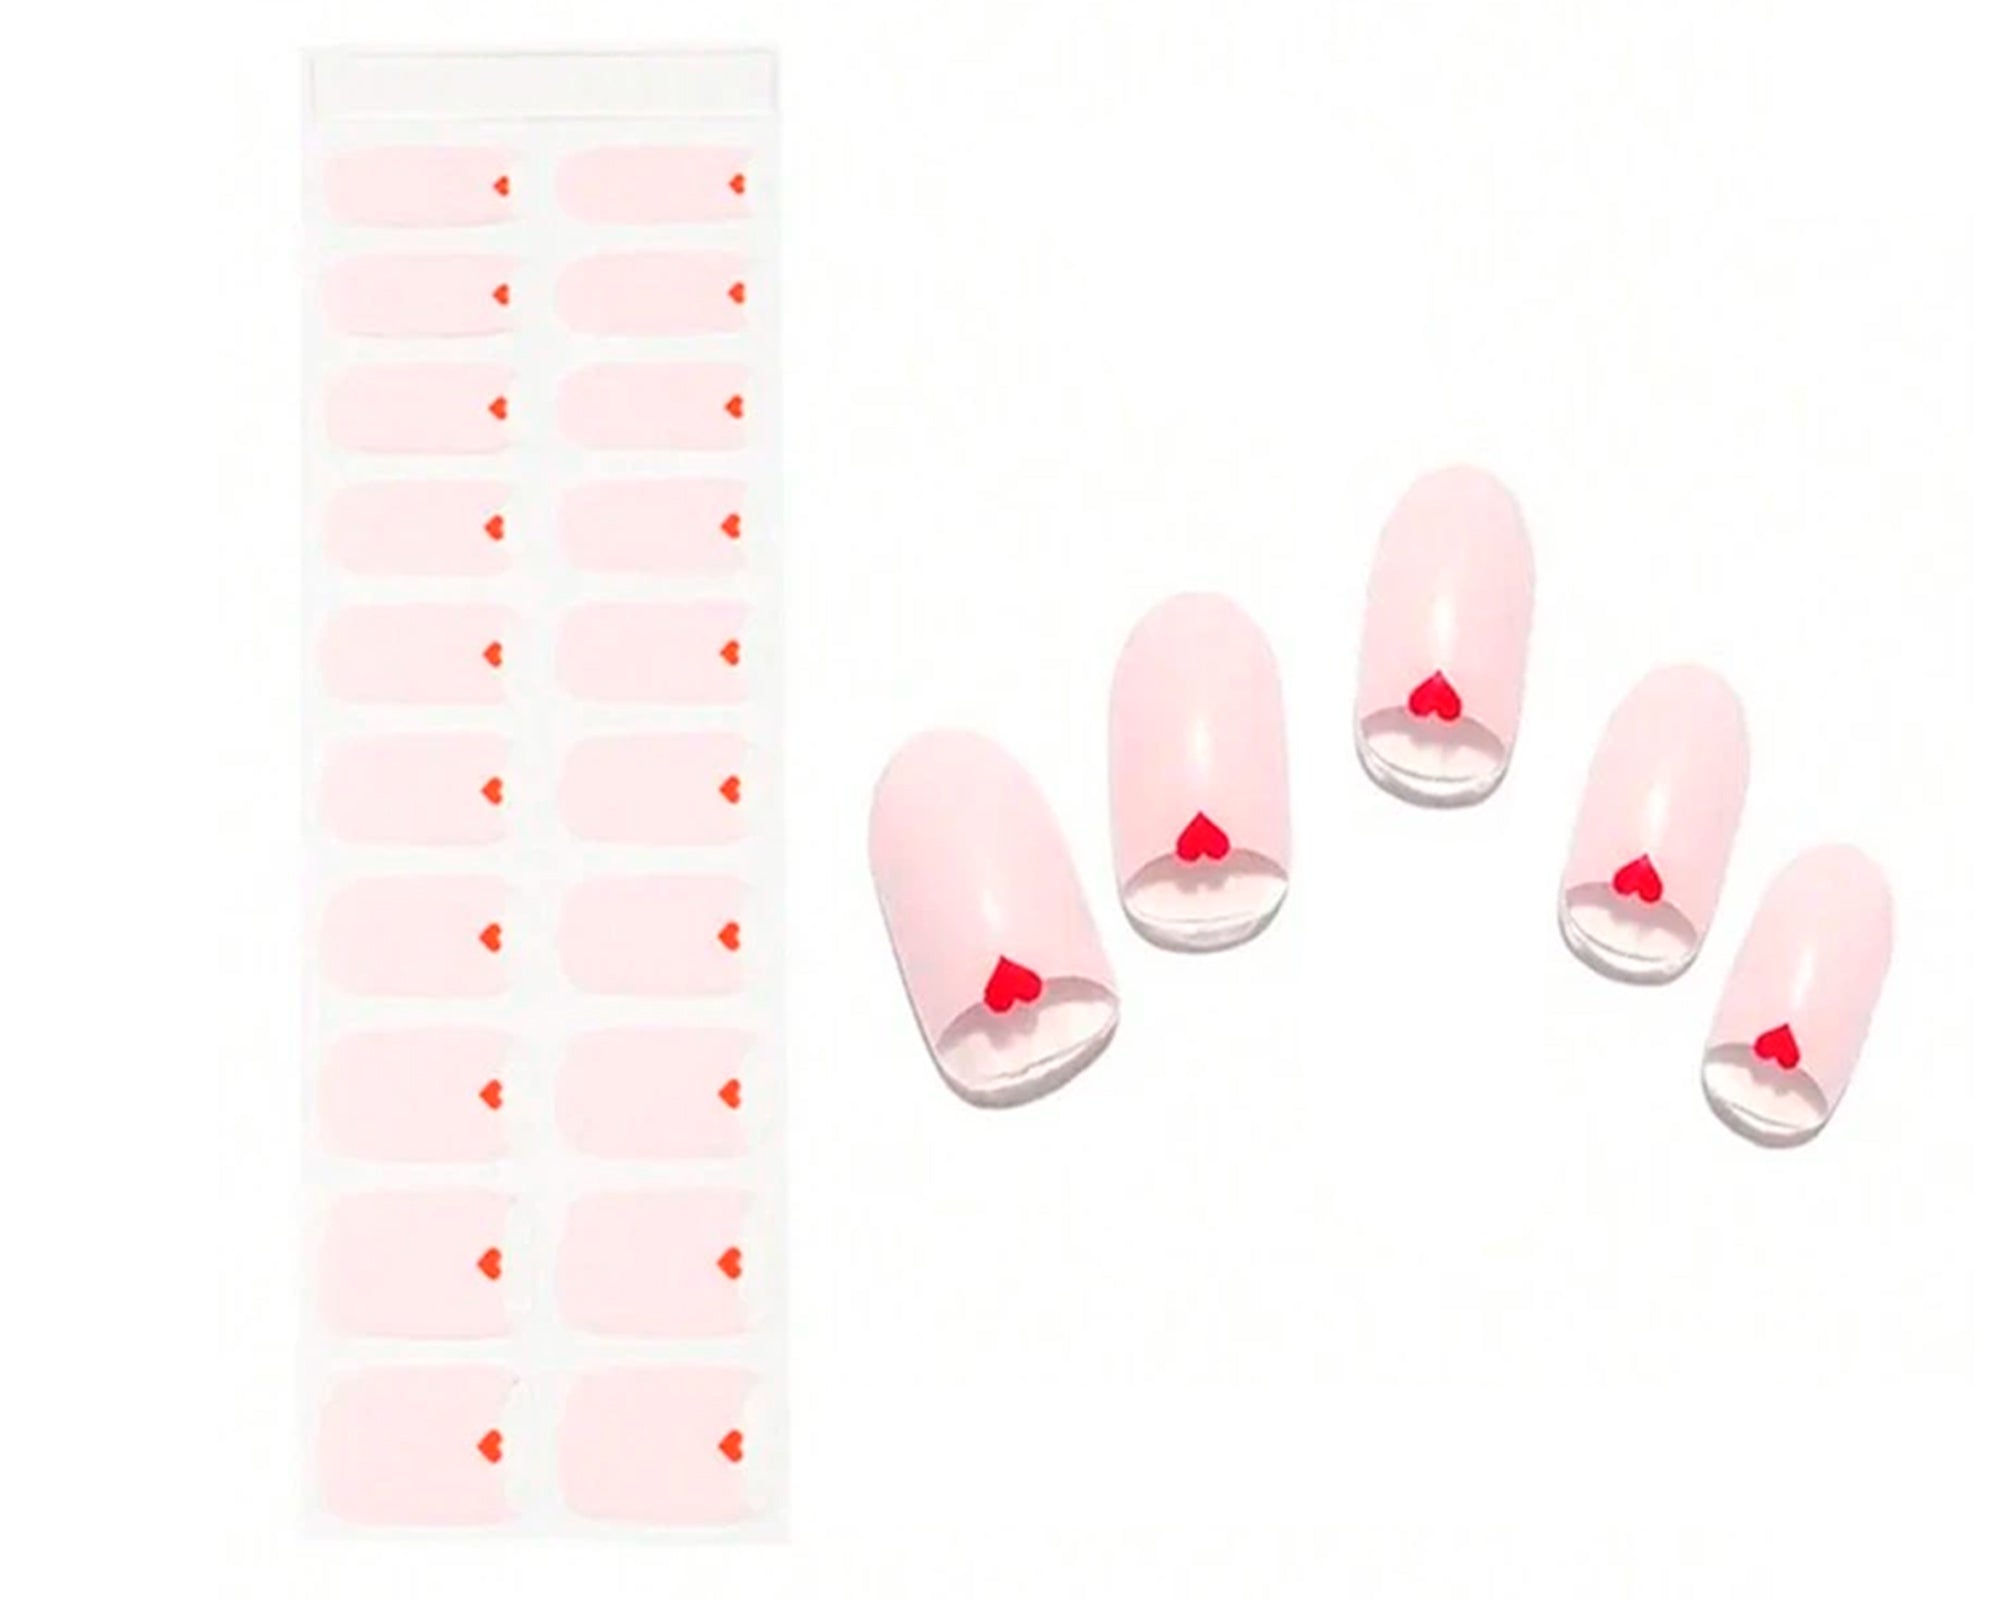 Découvrez le Kit d'Ongles Emano : une solution innovante et abordable pour sublimer vos ongles en un temps record. Notre technologie de gel semi-durci réagit parfaitement sous une lampe UV, préservant ainsi la santé naturelle de vos ongles.